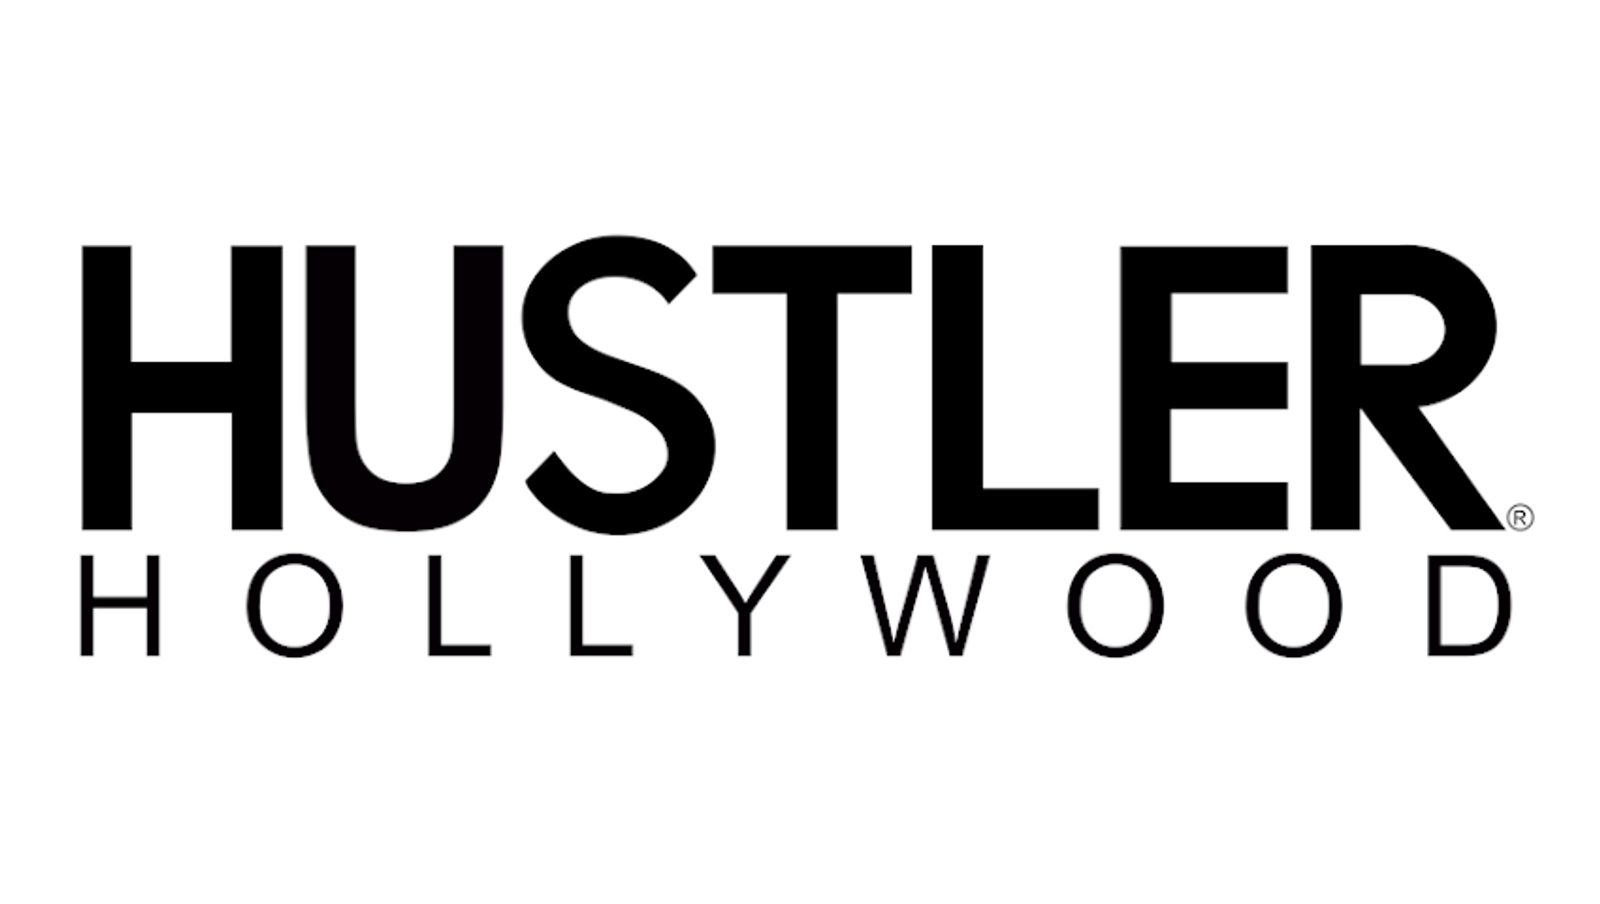 Hustler hollywood nashville tn